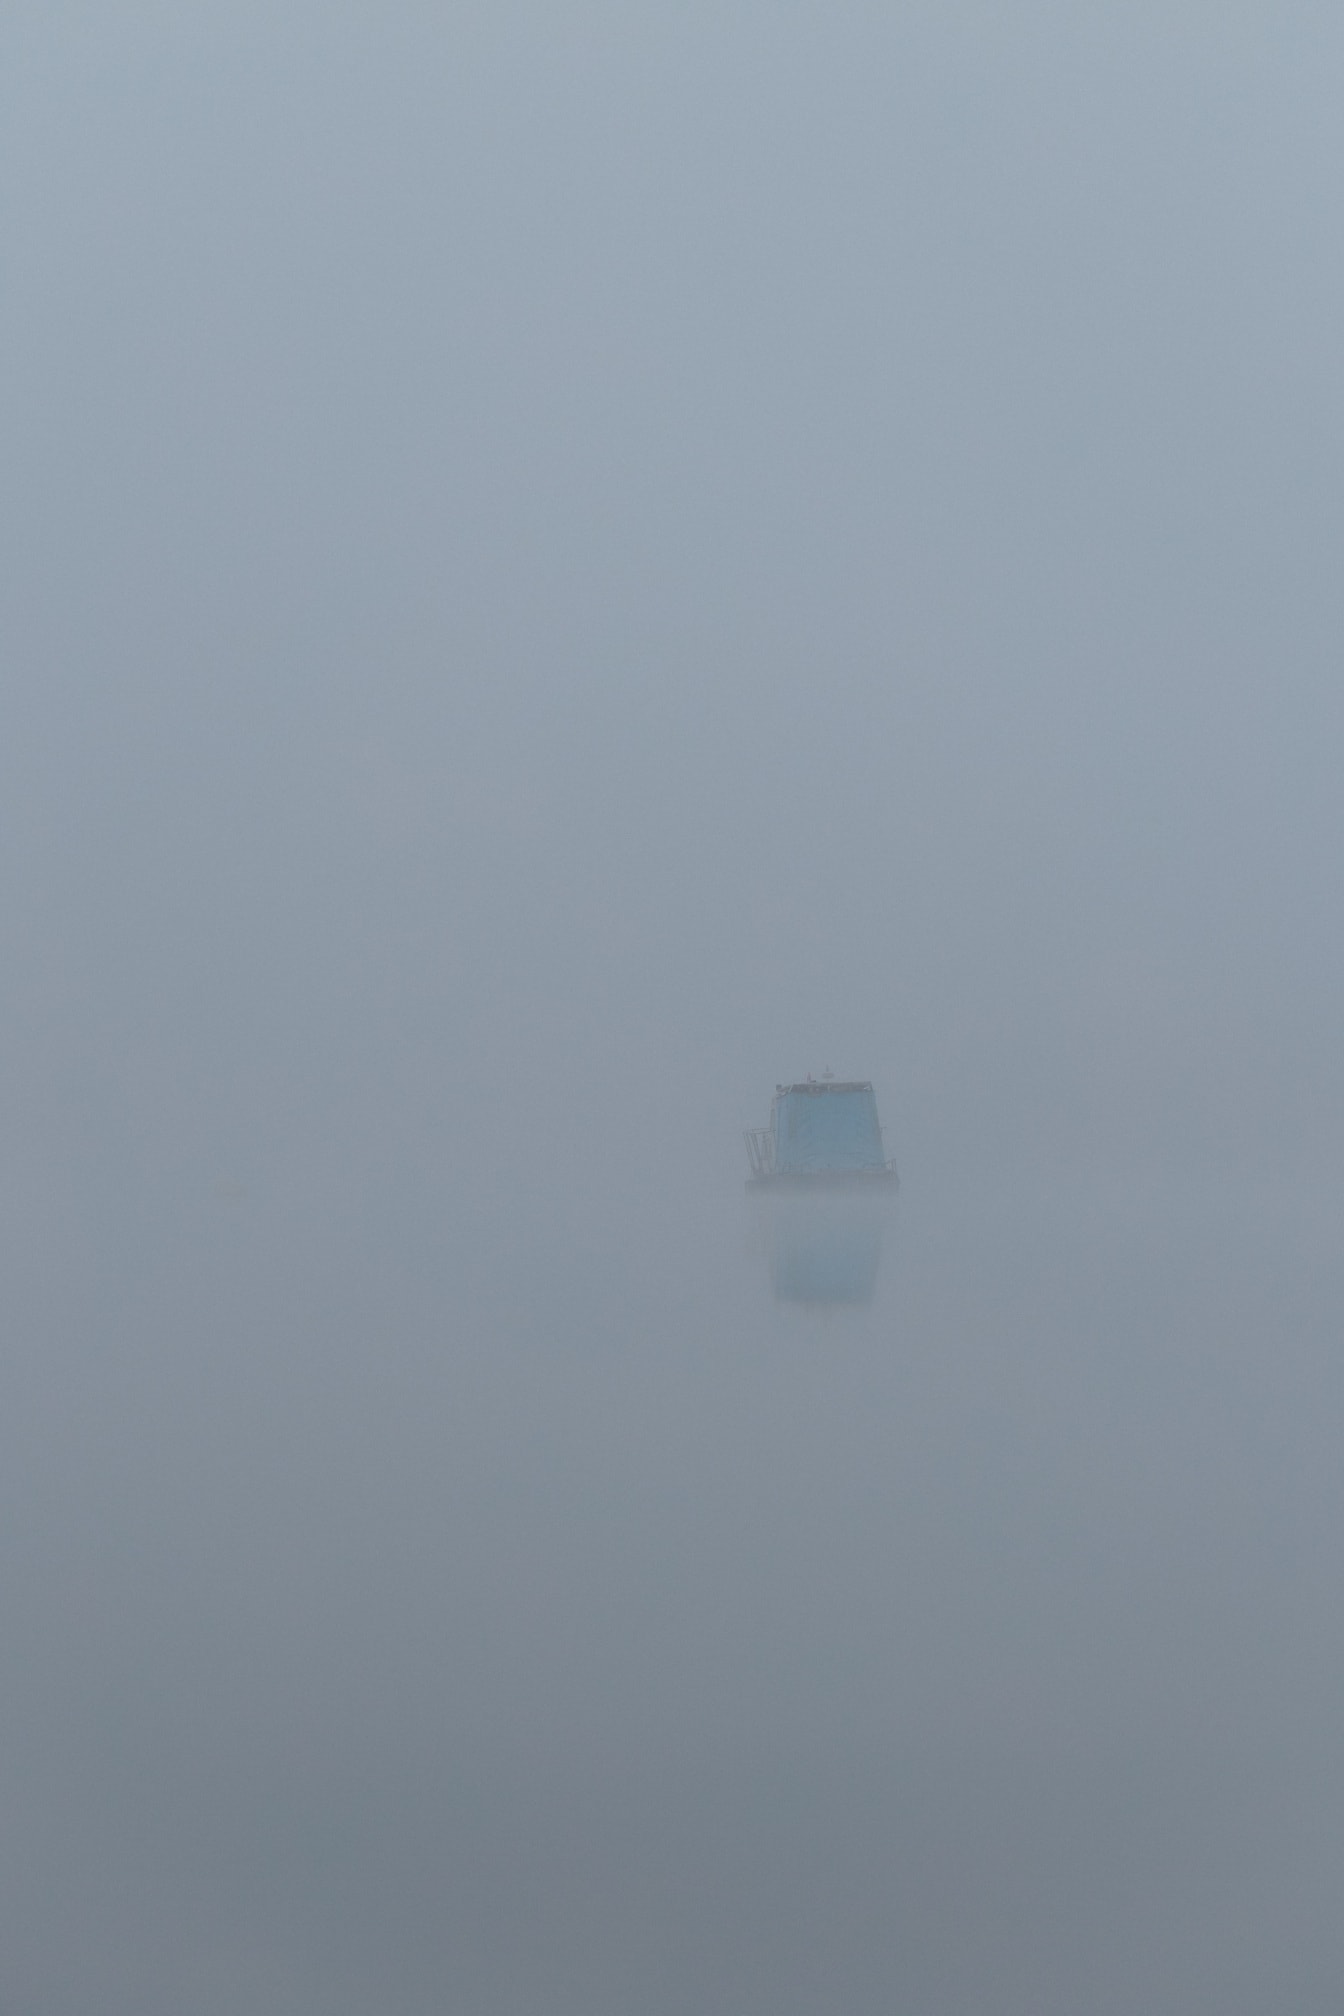 Neblina pesada à beira do lago com barco de pesca à distância